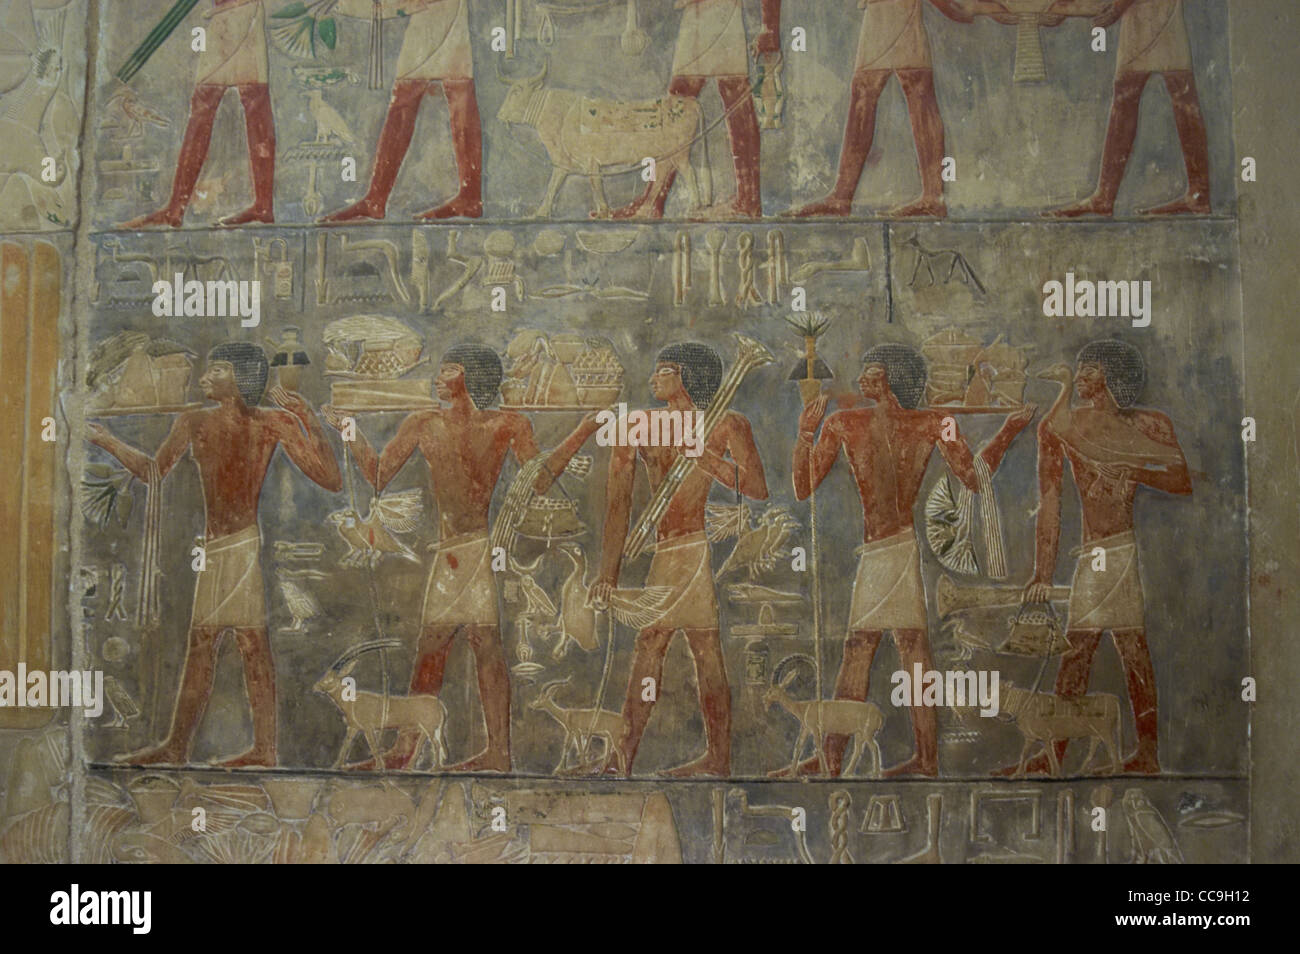 Mastaba de Ptahhotep et Akhethotep. Relief représentant l'exécution de serveurs de nourriture funéraire Ptahhotep. Mur ouest. Saqqara. L'Égypte Banque D'Images